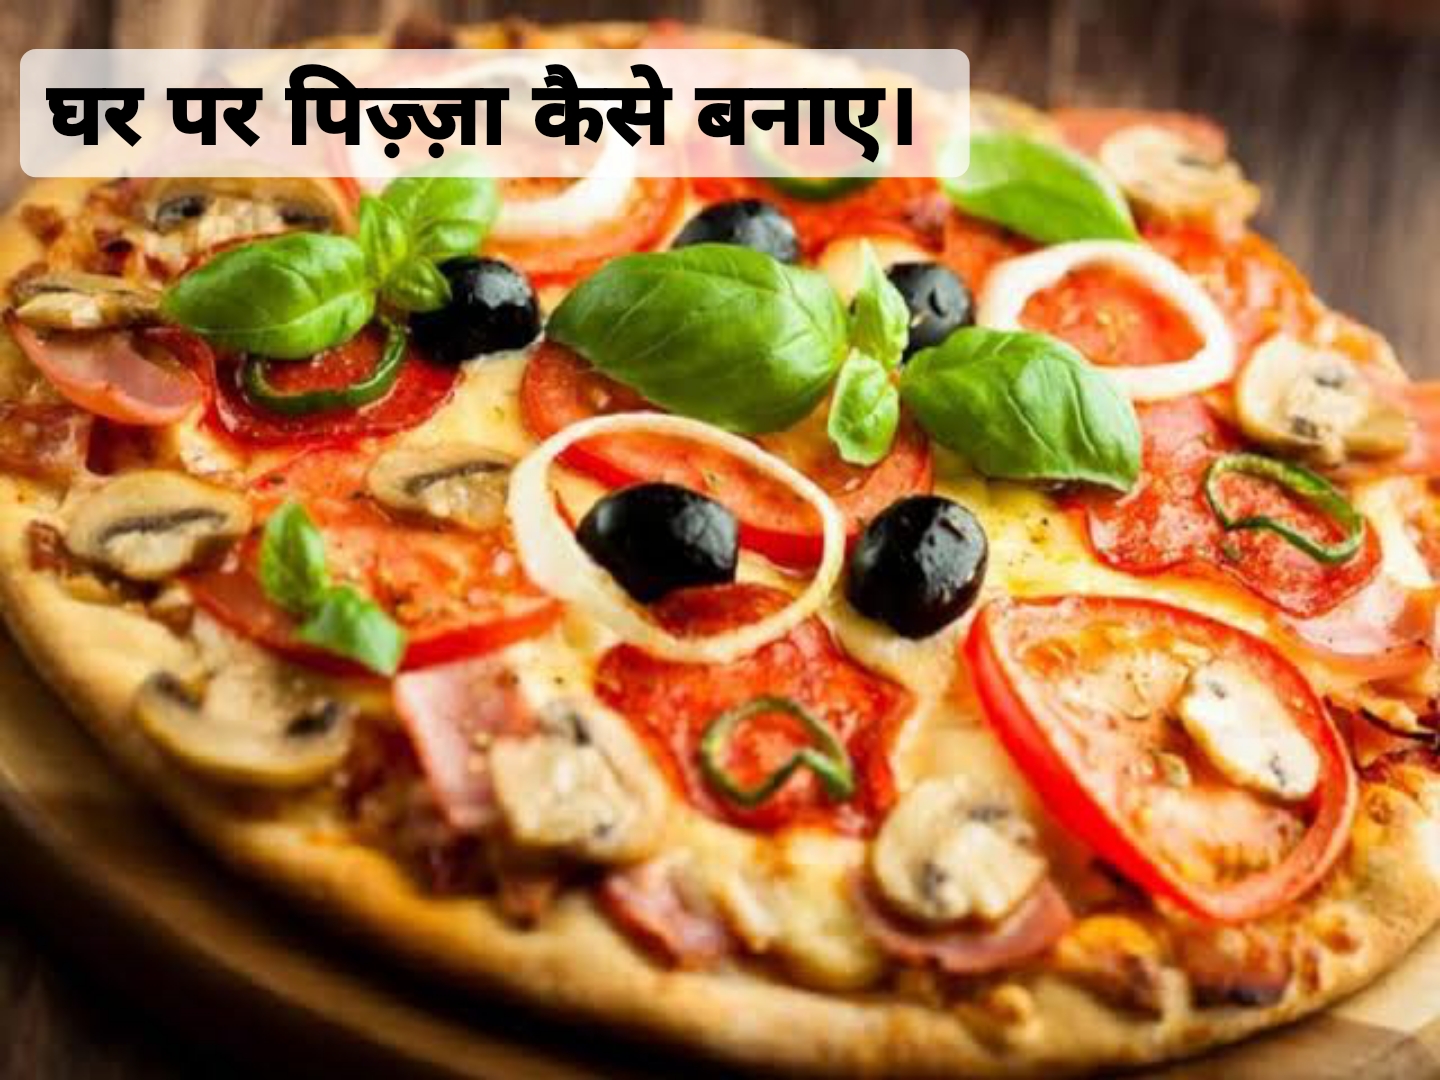 Homemade pizza recipe in hindi, घर पर पिज़्ज़ा कैसे बनाएं, पिज्जा बनाने की विधि।